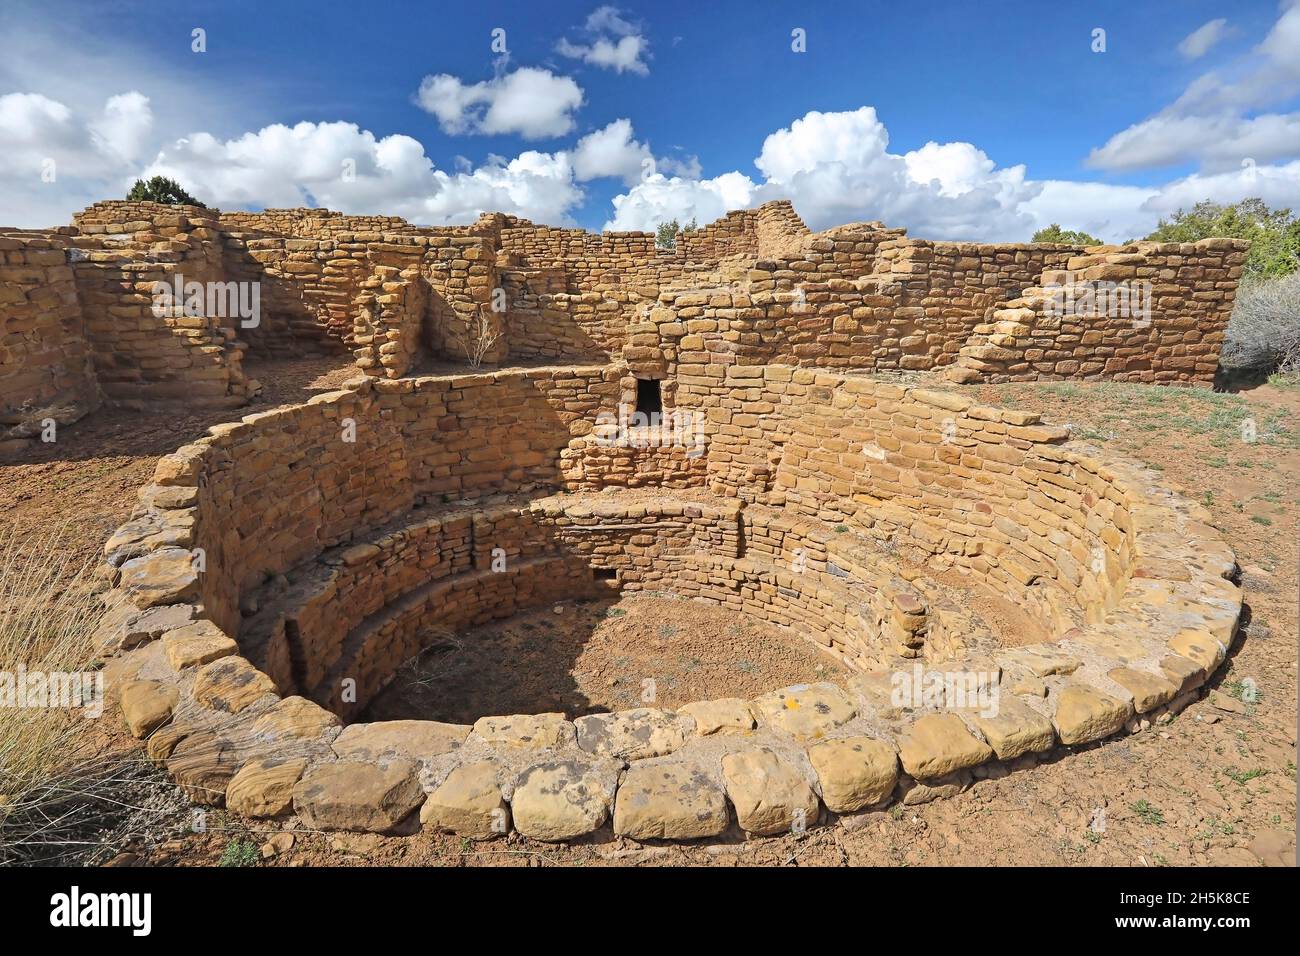 Kiva, una estructura de piedra utilizada por los pueblos como lugar de reunión ceremonial o política en el Parque Nacional Mesa Verde Foto de stock